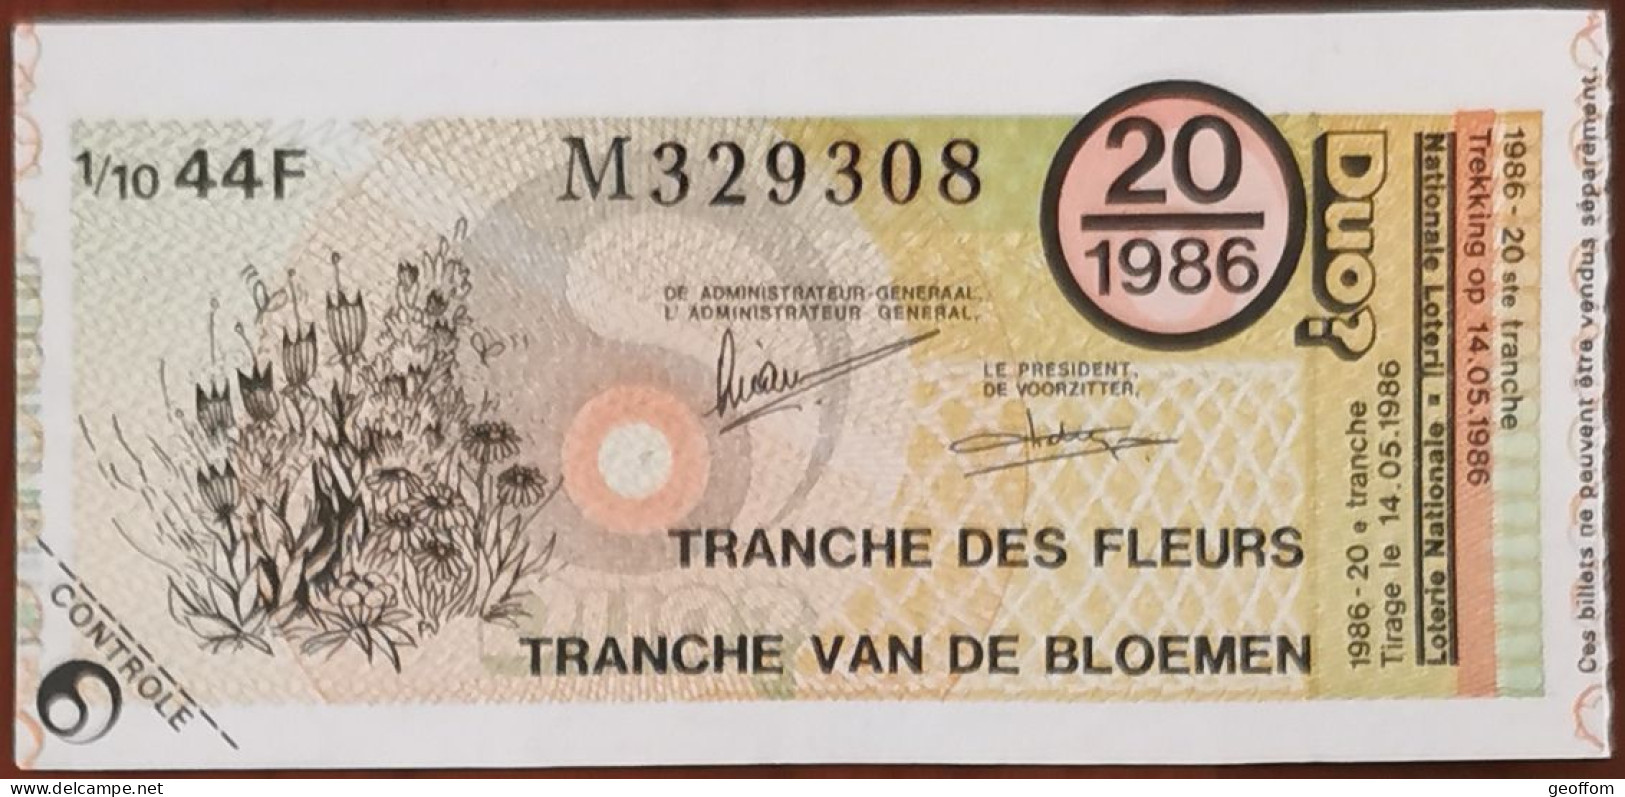 Billet De Loterie Nationale Belgique 1986 20e Tranche Des Fleurs - 14-5-1986 - Biglietti Della Lotteria